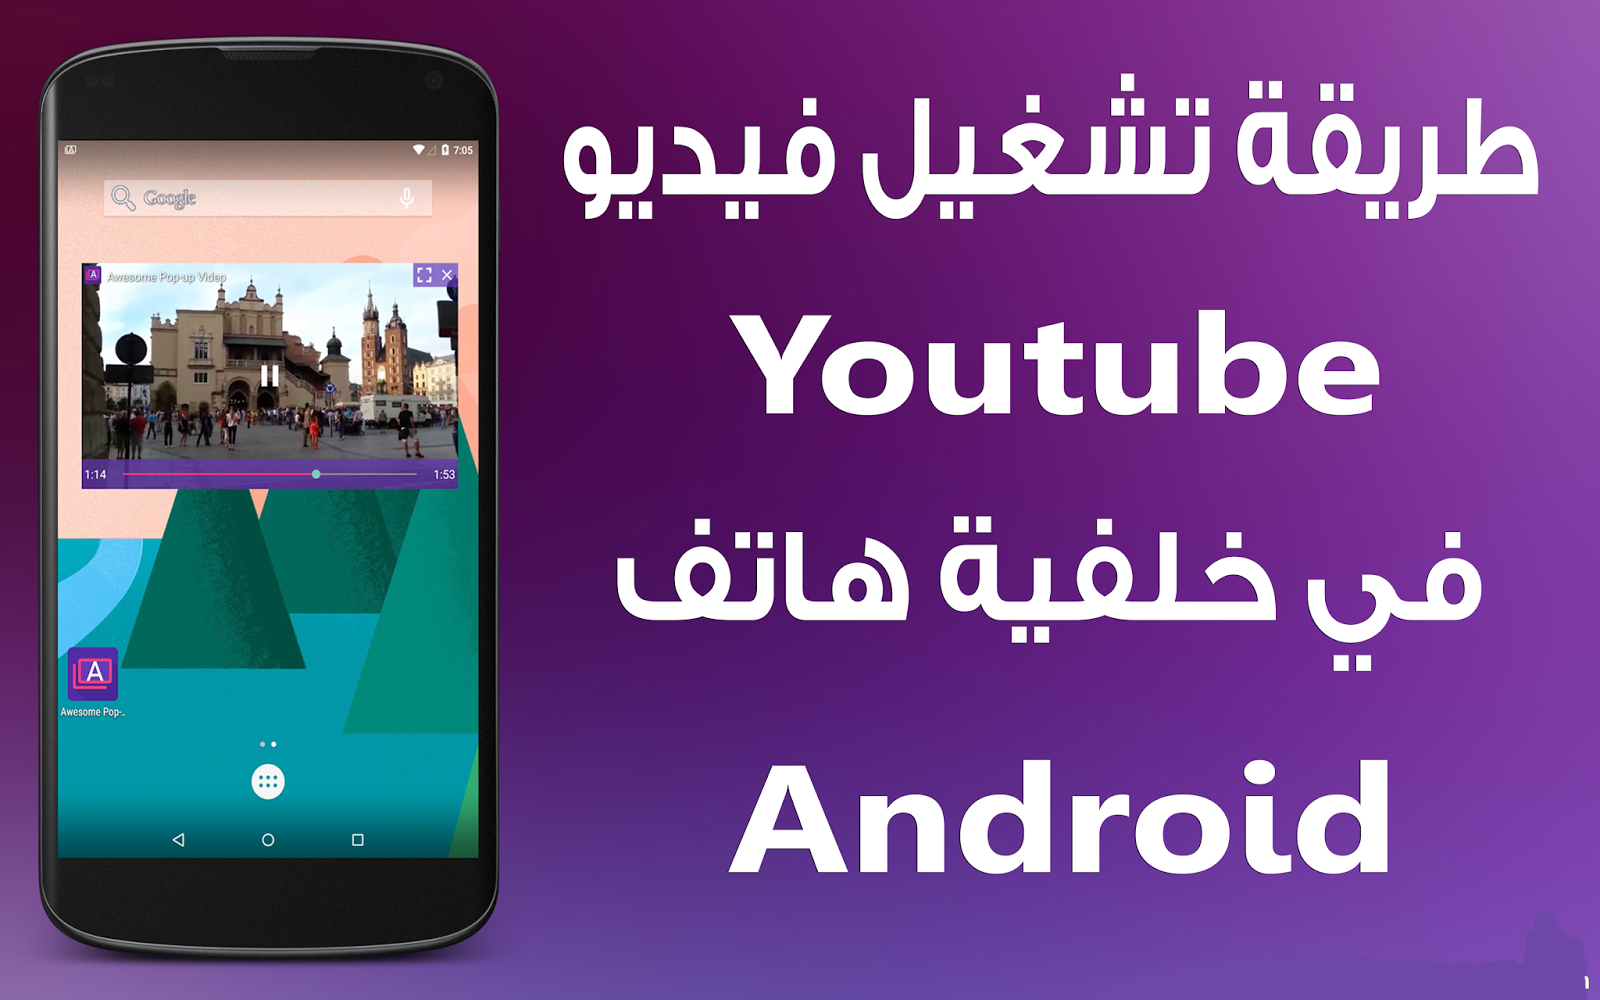 Аналог ютуба для андроид. Youtube 2015 Android. Youtube 2014 Android. Мой новый андроид youtube.